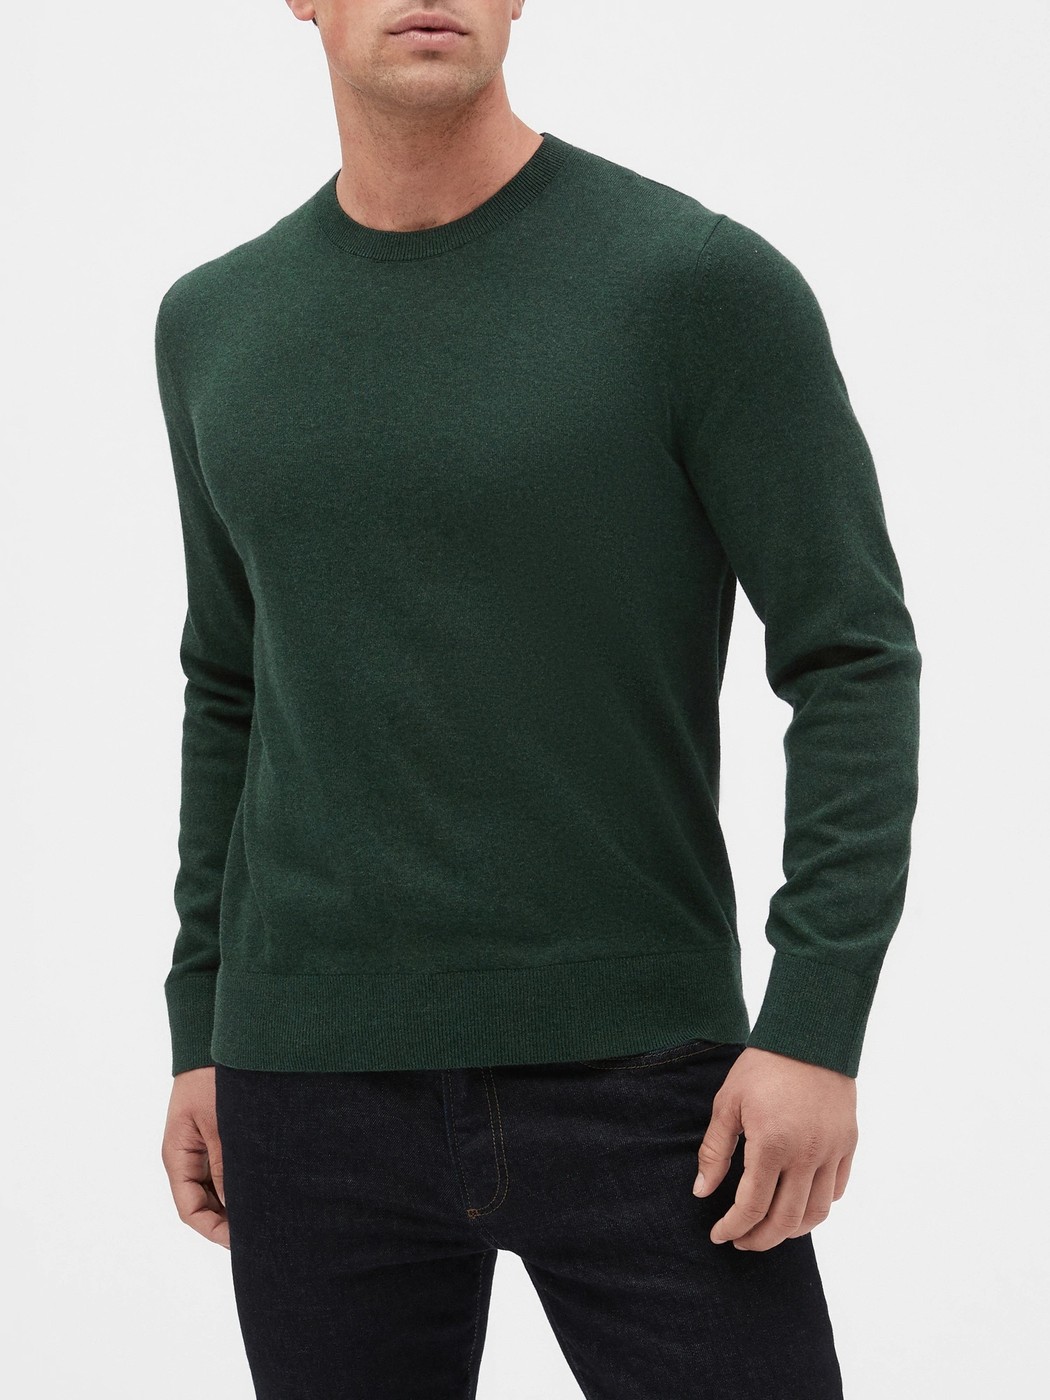 Свитер мужской - свитер GAP, XL, XL